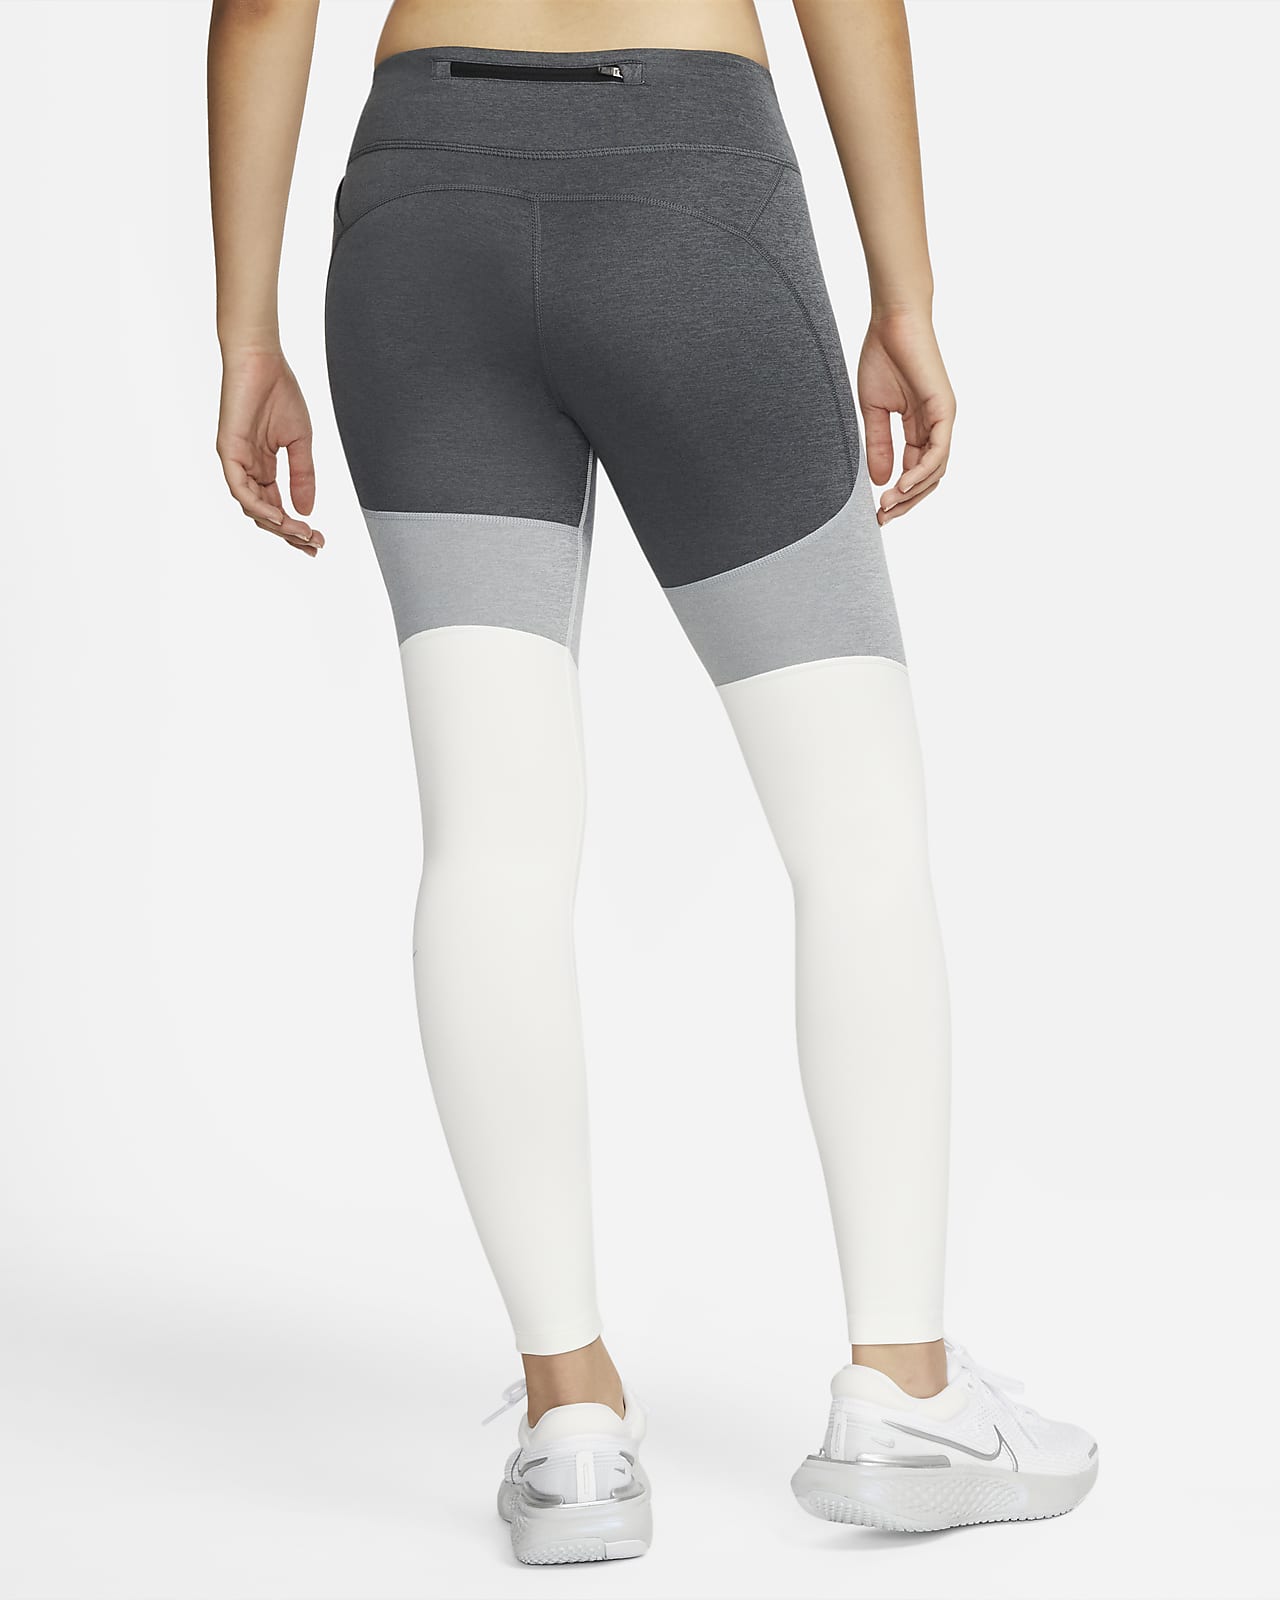 Women's Mid-Rise Pocket Leggings. Nike.com